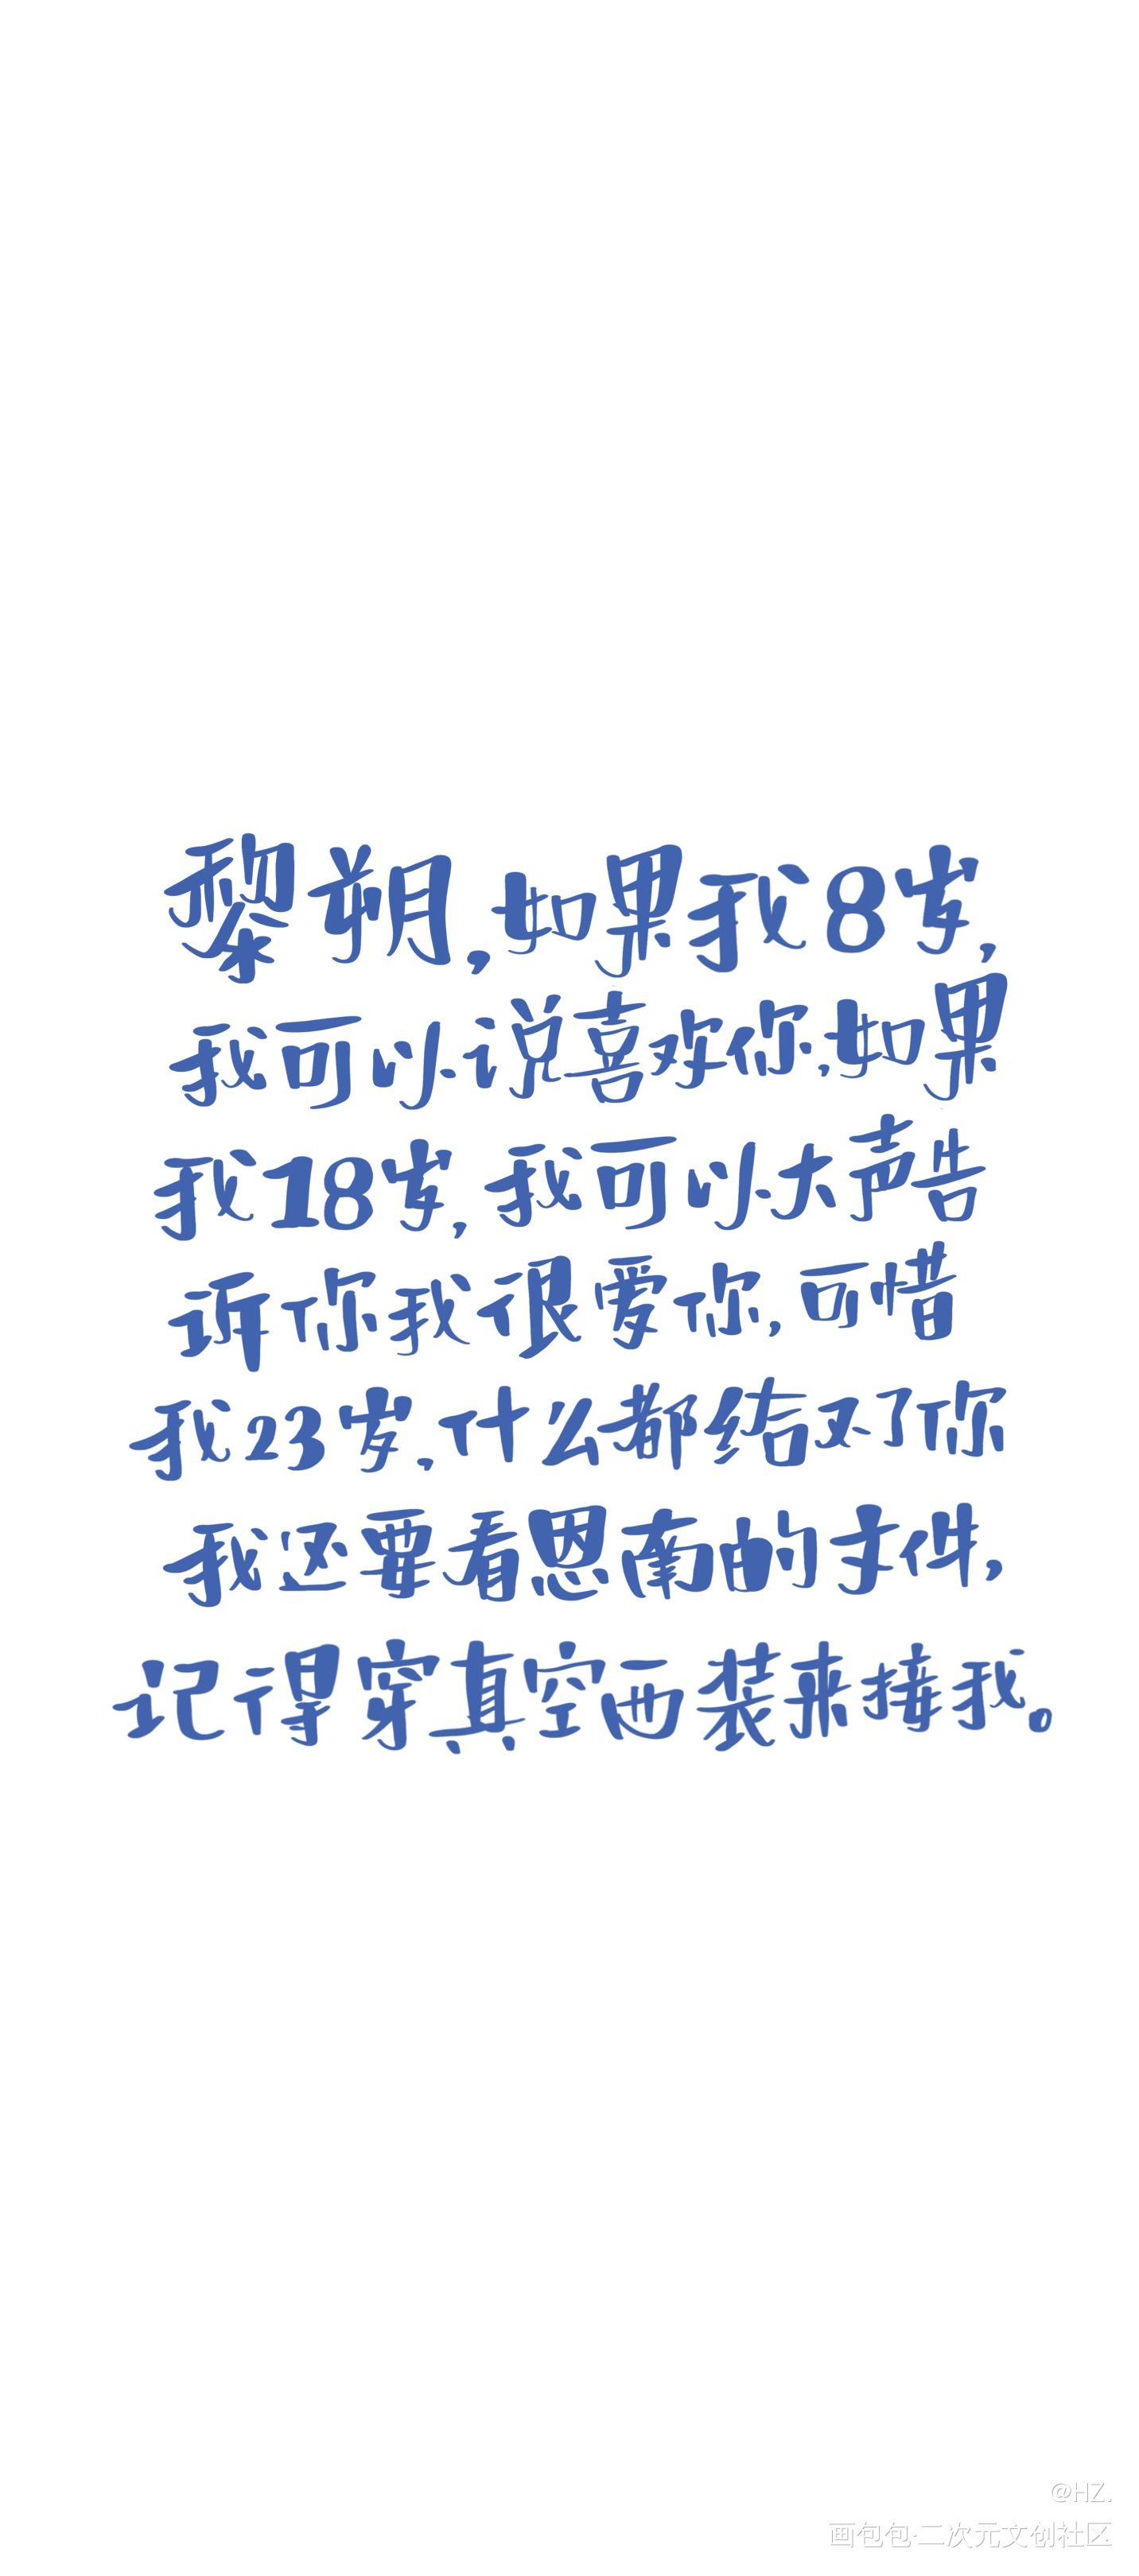 小赵的壁纸_谁把谁当真188男团赵锦辛字体设计见字如晤板写手写绘画作品